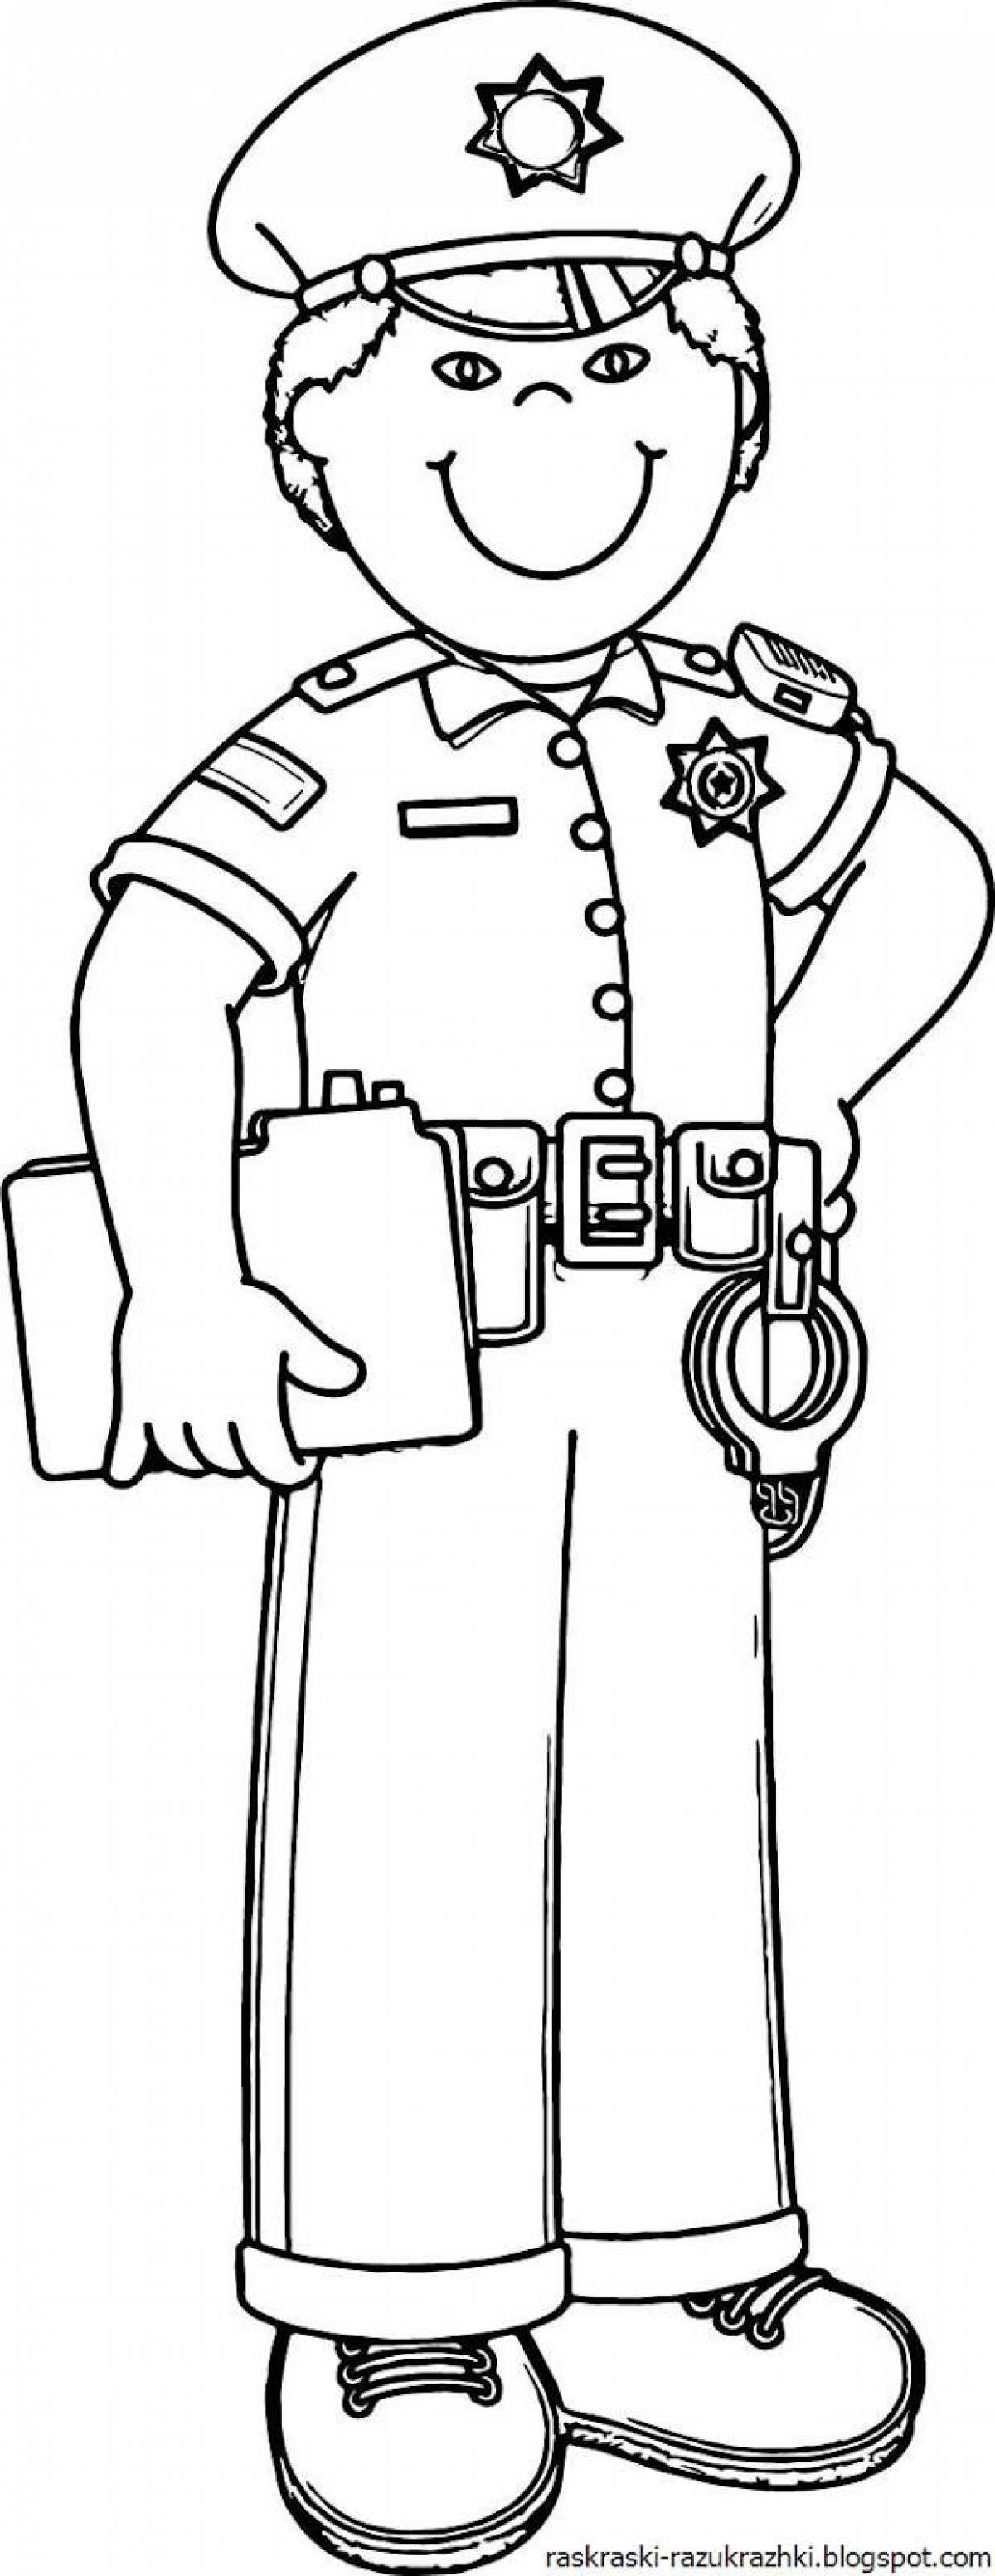 Анимированная раскраска полицейского для детей